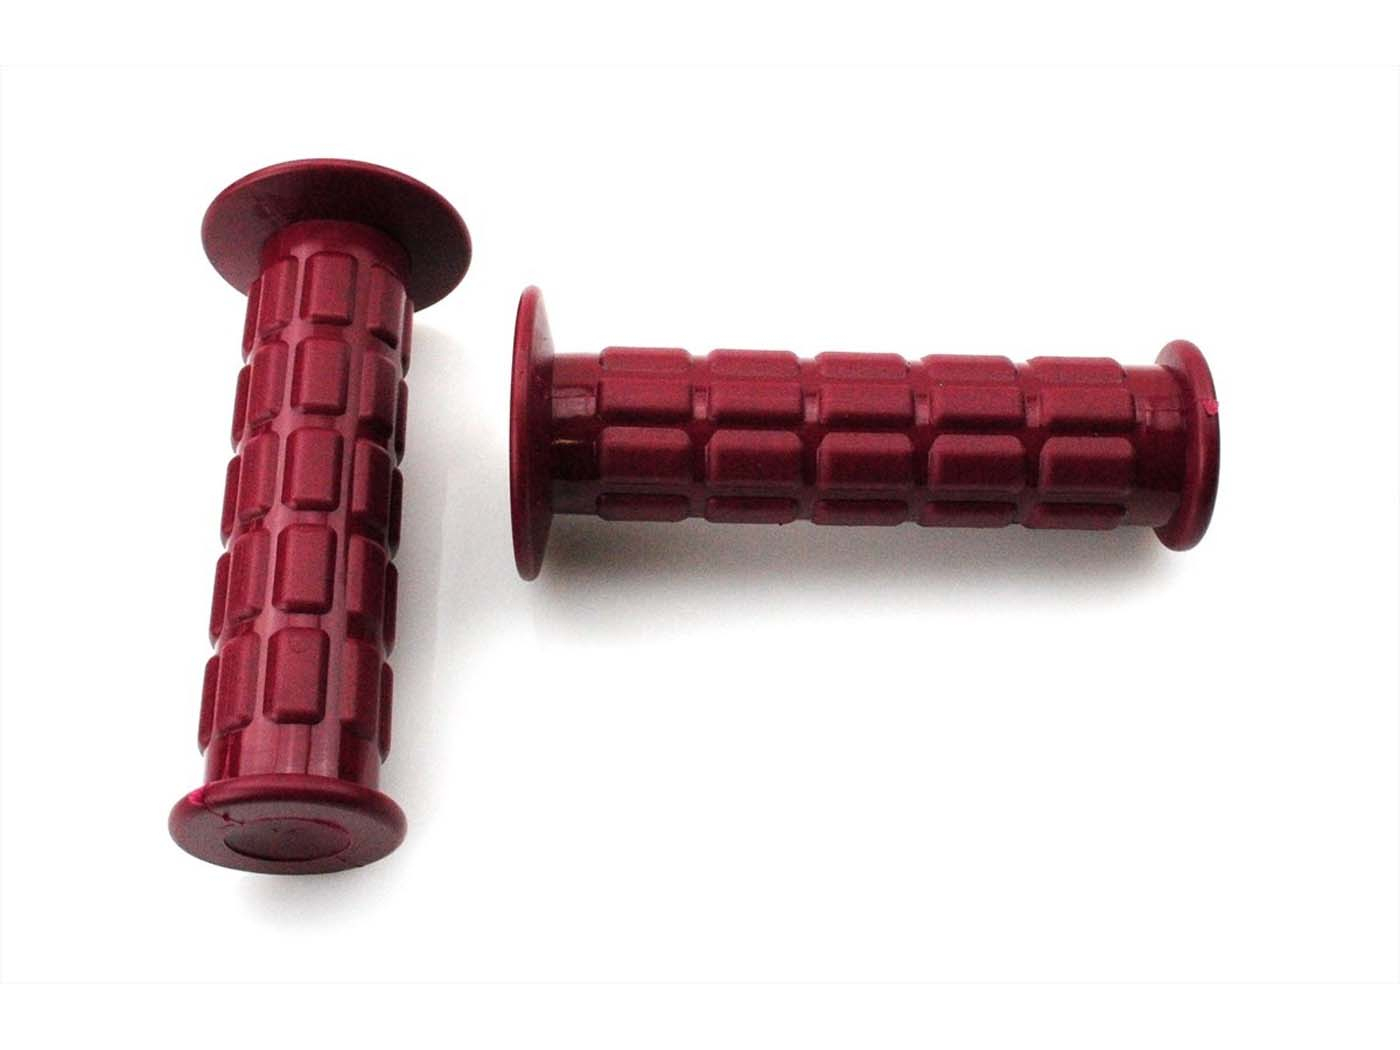 Rubber Grip Set Inner Diameter 25/22 Mm Total Length 120mm Color Wine Red For Zündapp, Kreidler, Hercules, Puch, Simson